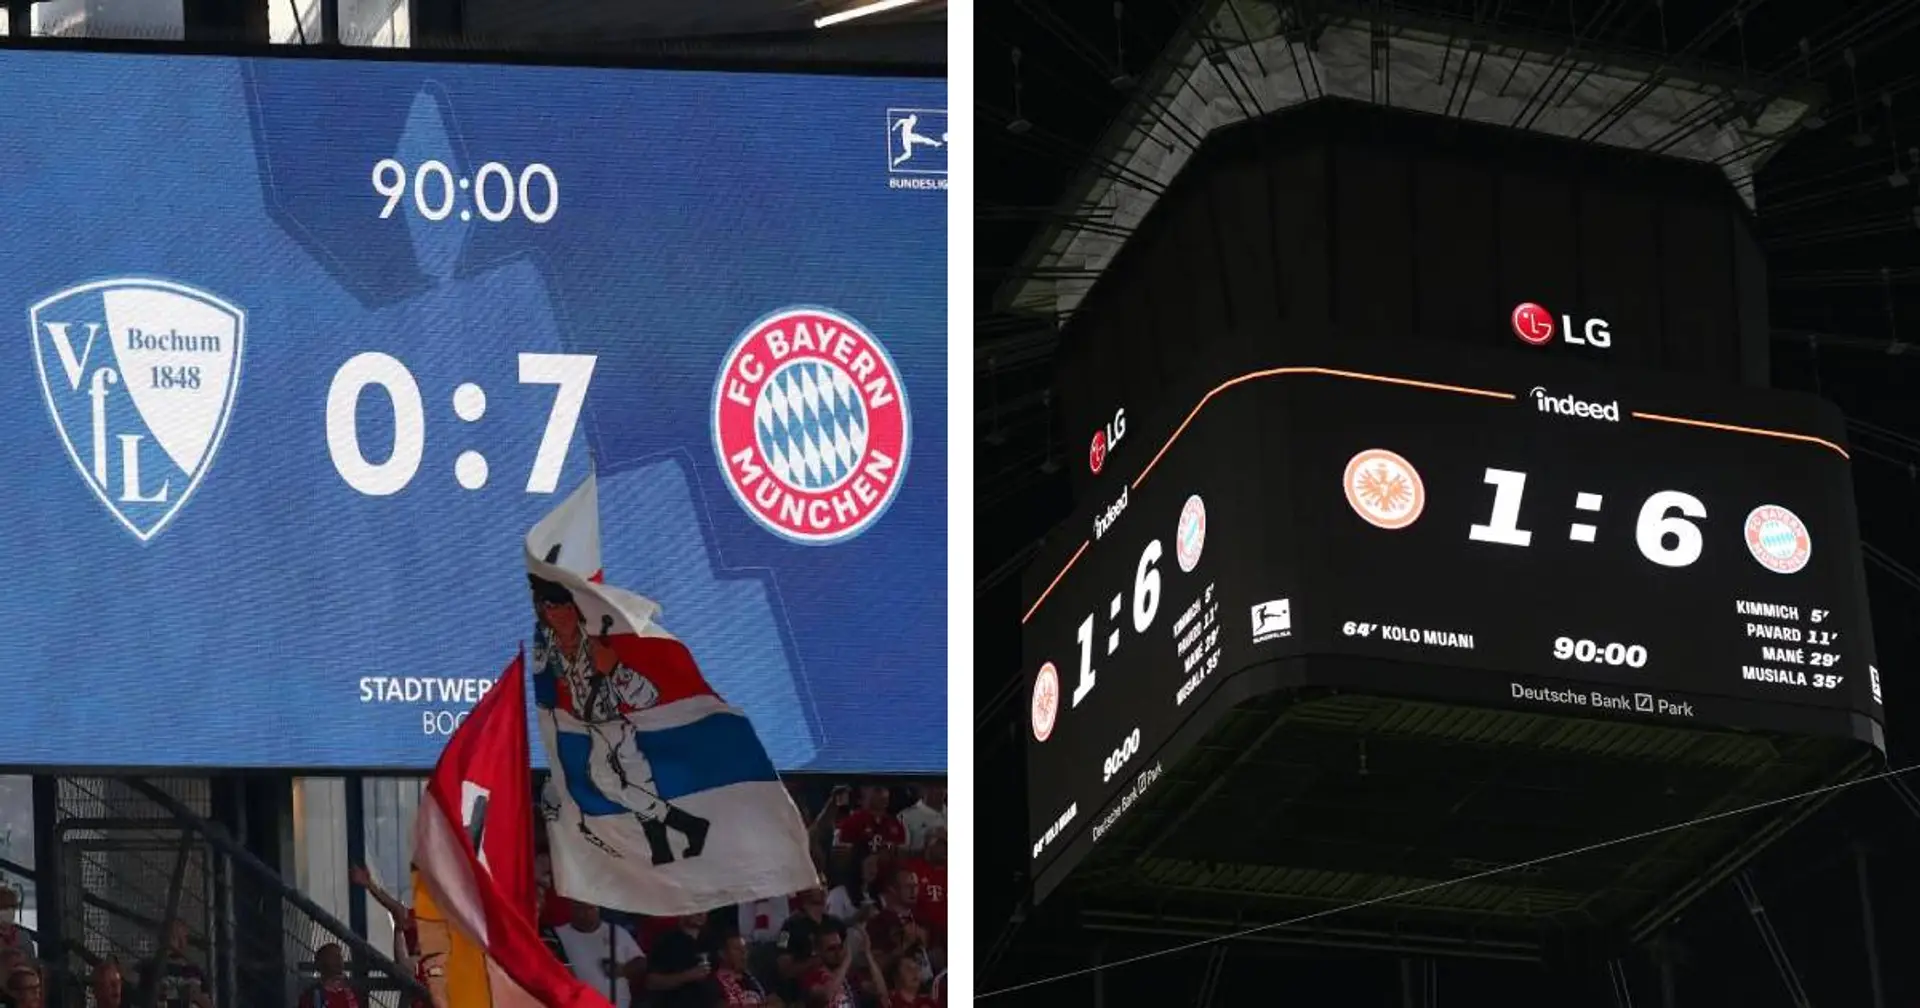 20 Tore in ersten 4 Pflichtspielen - Bayern ist so torgefährlich wie noch nie zuvor!